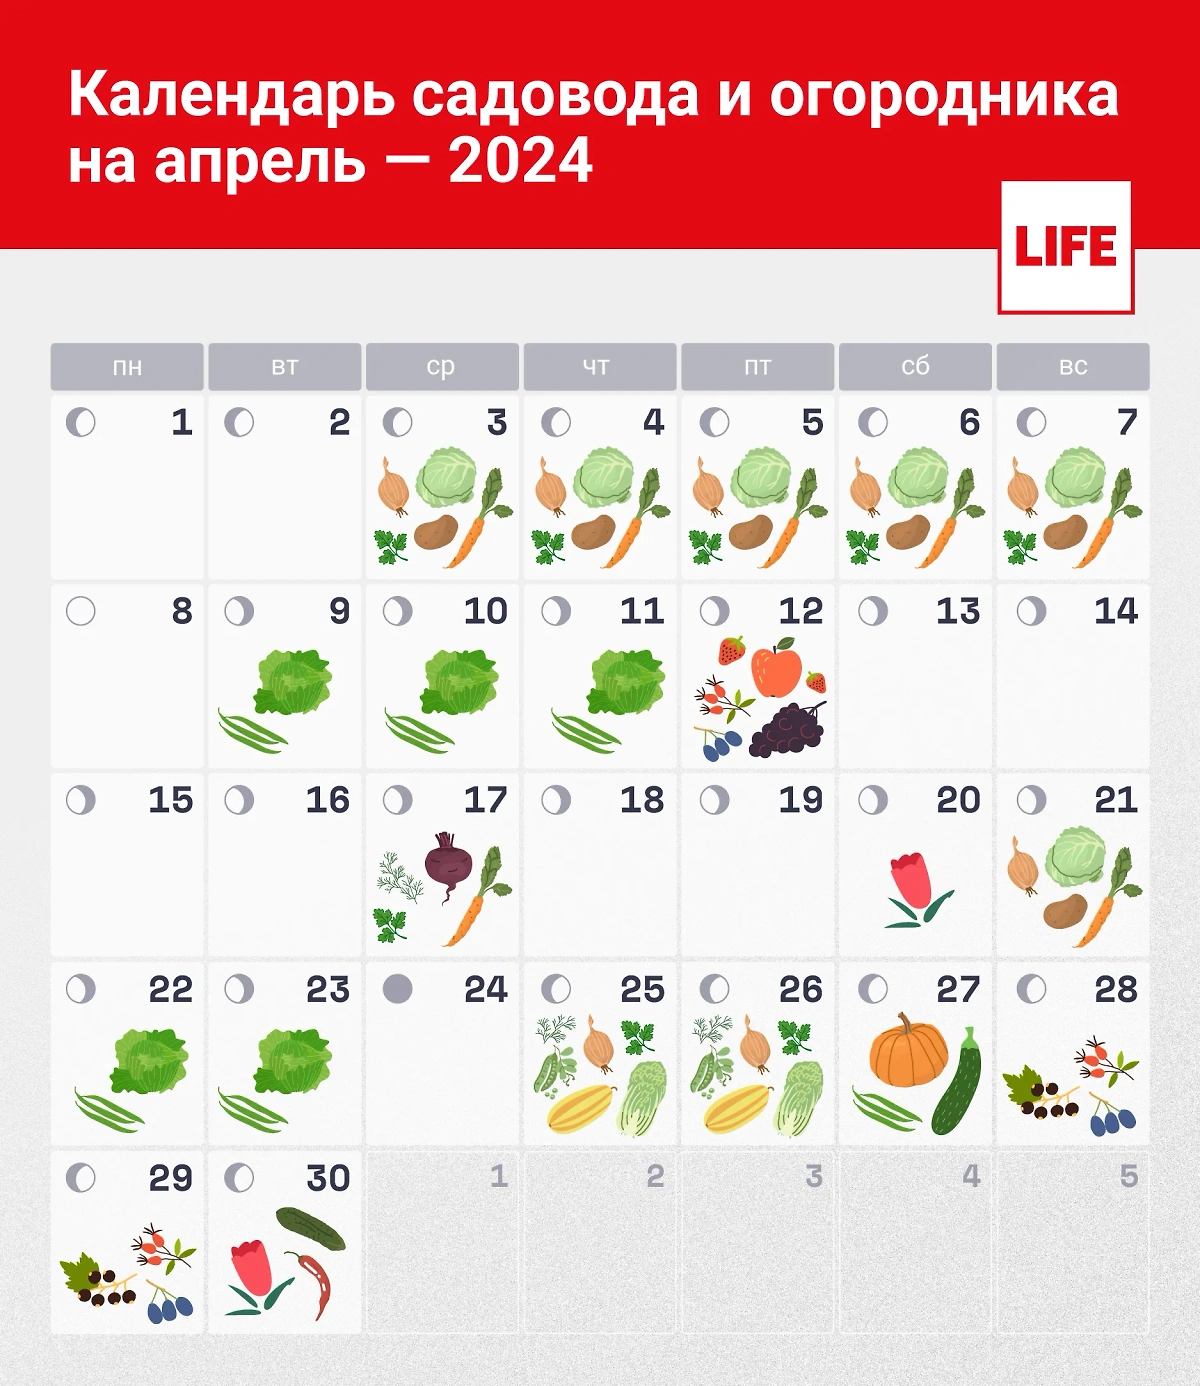 Лунный календарь садовода и огородника на апрель 2024 года: в какой день что сажать. Инфографика © Life.ru 